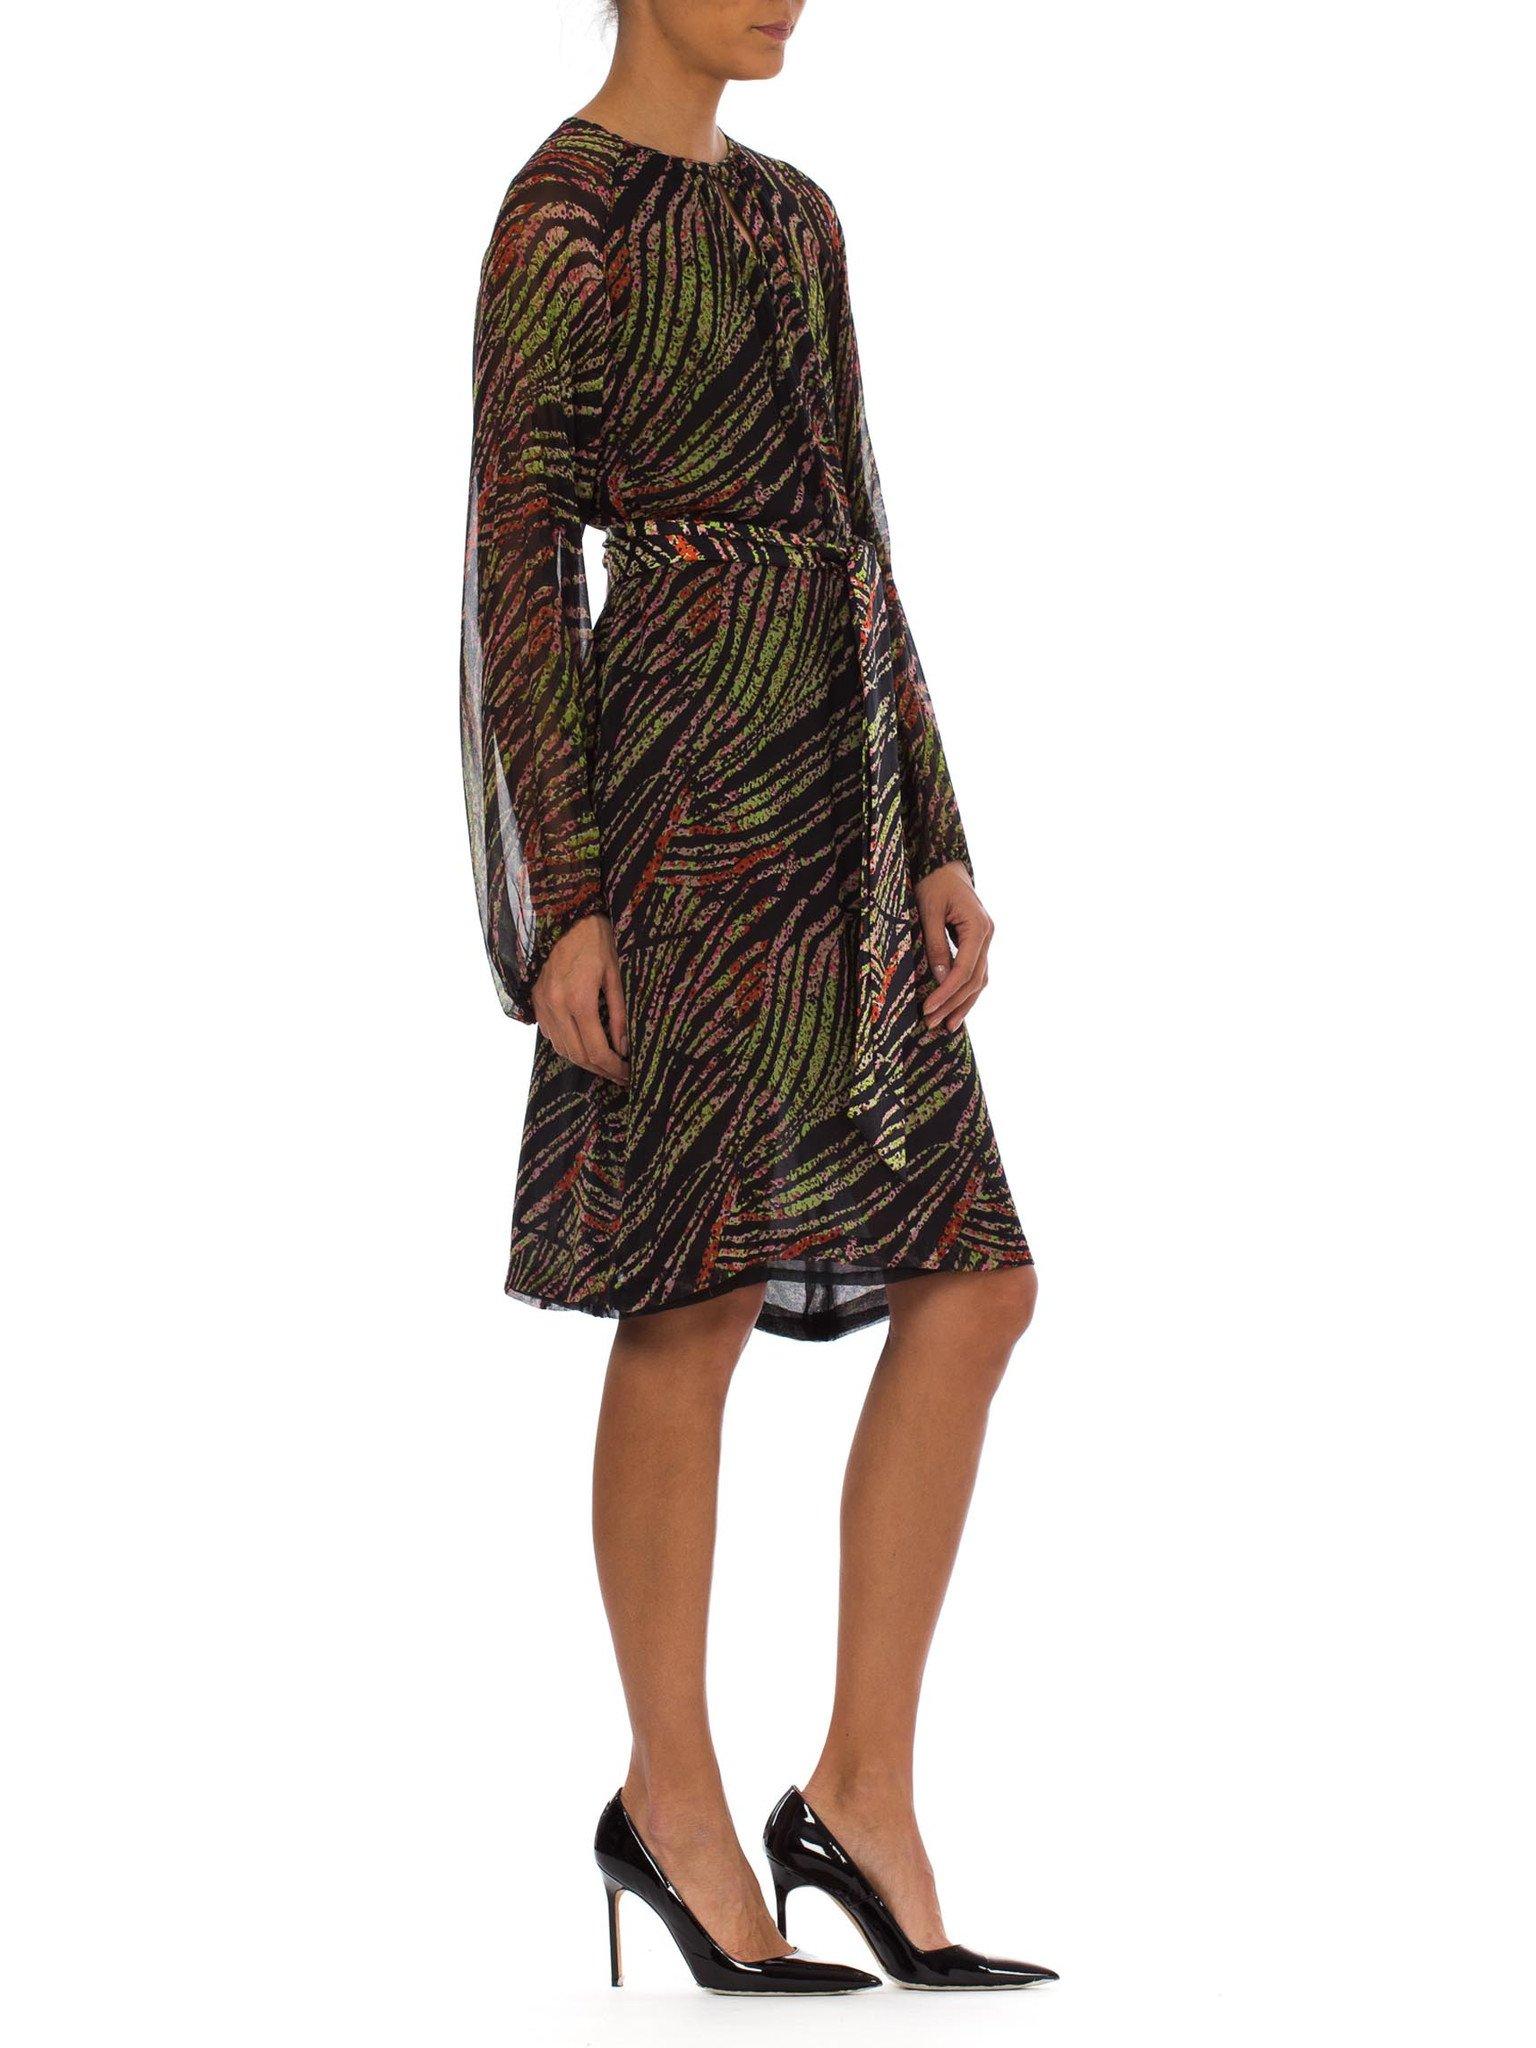 robe à manches longues en mousseline de soie tropicale abstraite des années 1970, avec finition en couture française